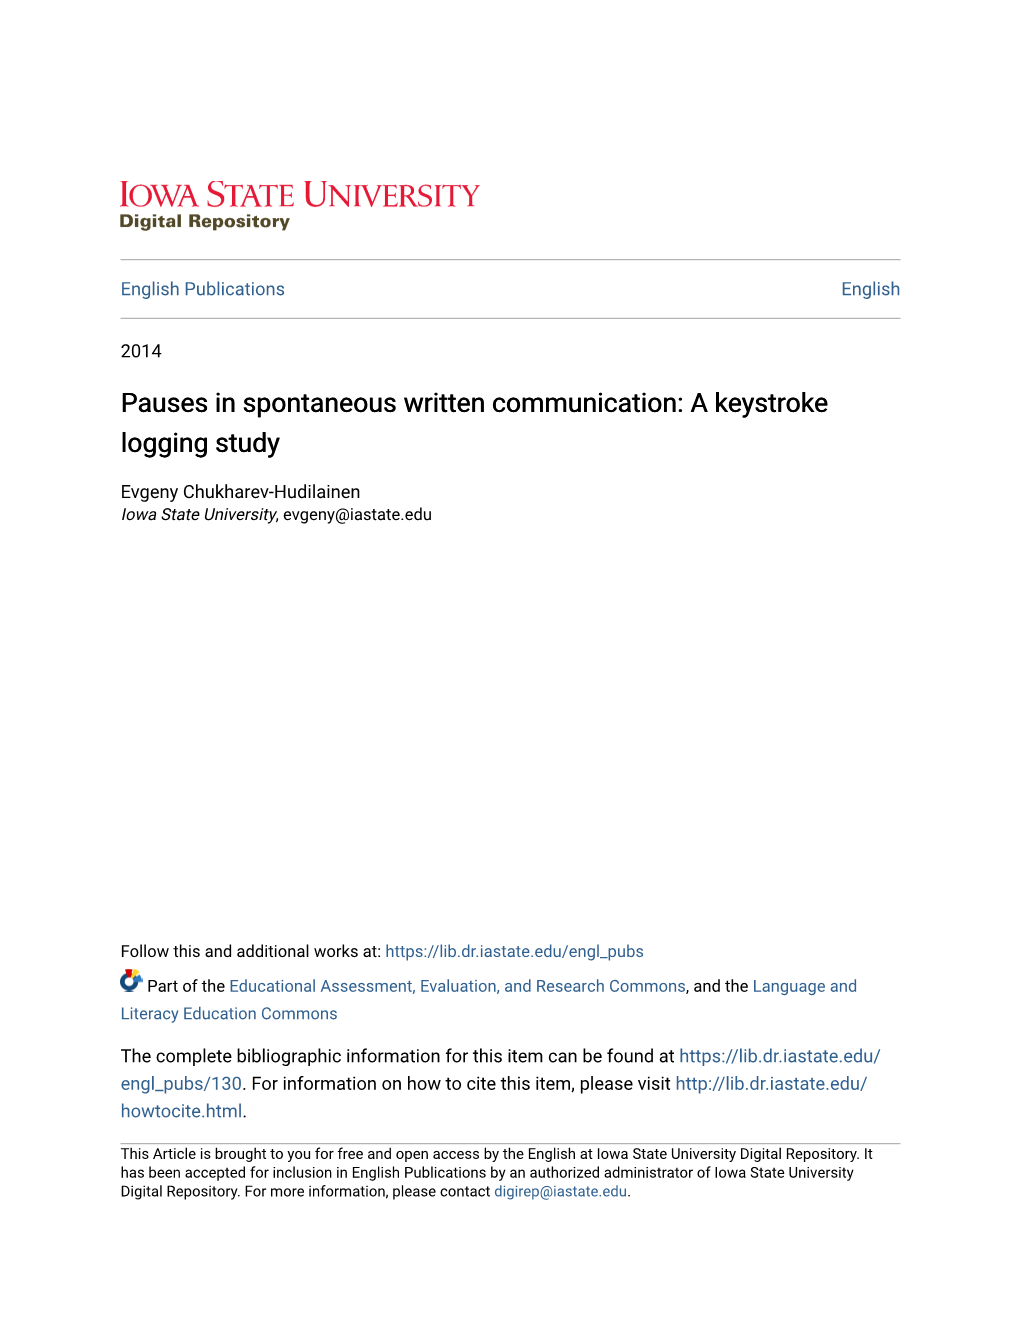 Pauses in Spontaneous Written Communication: a Keystroke Logging Study